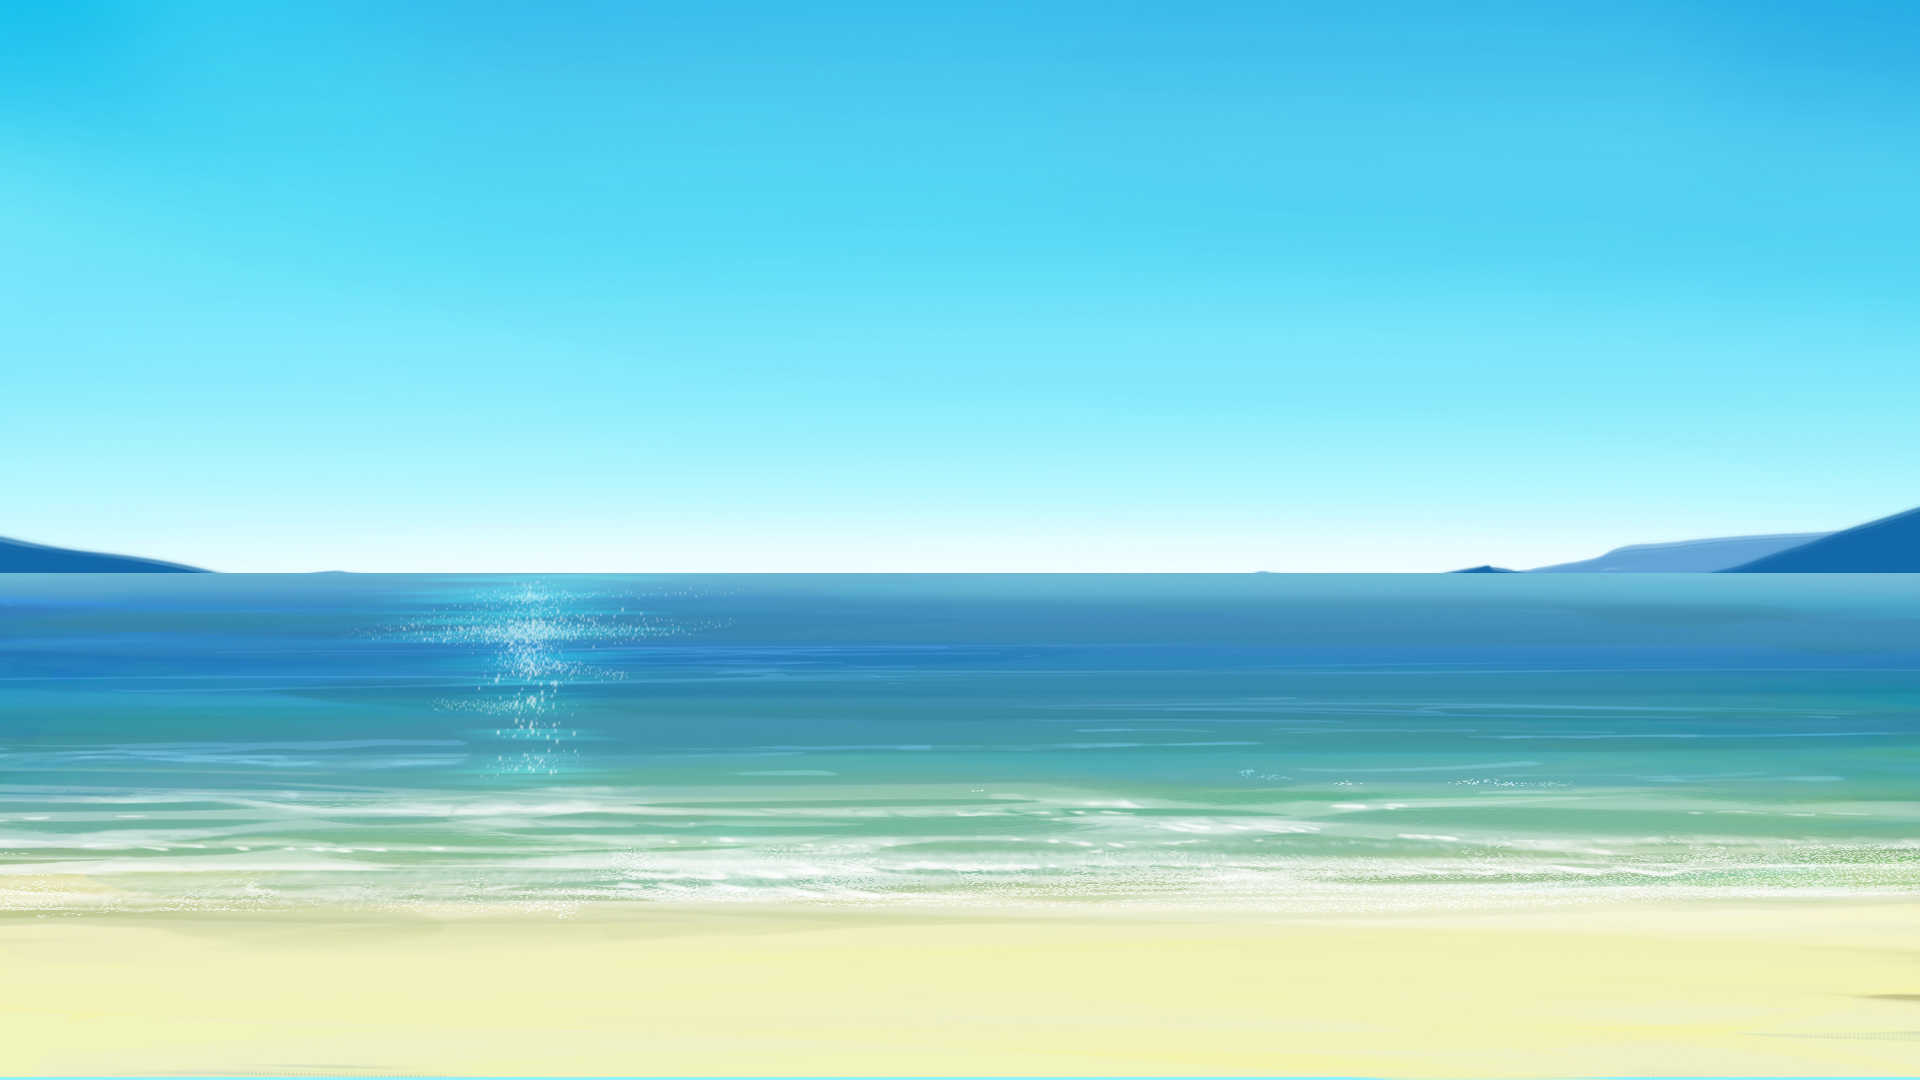 海 砂浜背景素材 Psd背景素材 背景支援サイト 背景ラボ